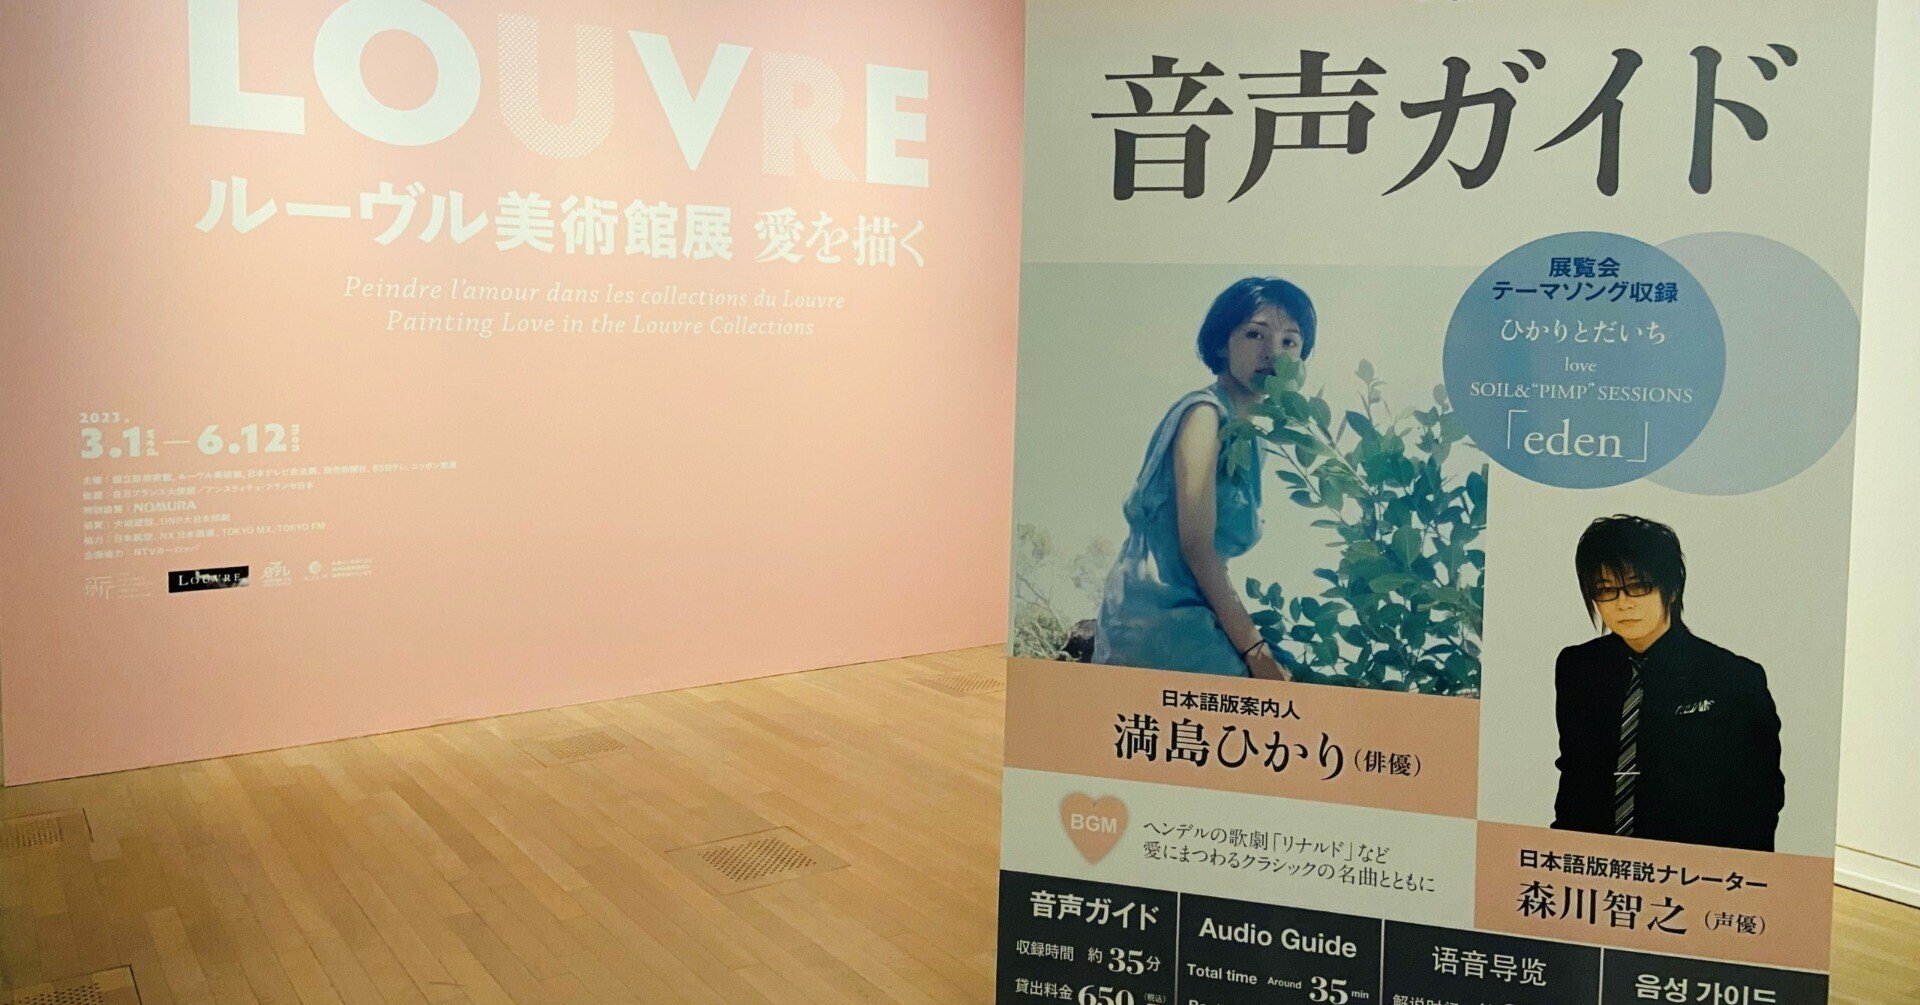 満島ひかりさんと森川智之さんが音声ガイドでご案内❤「ルーヴル美術館 